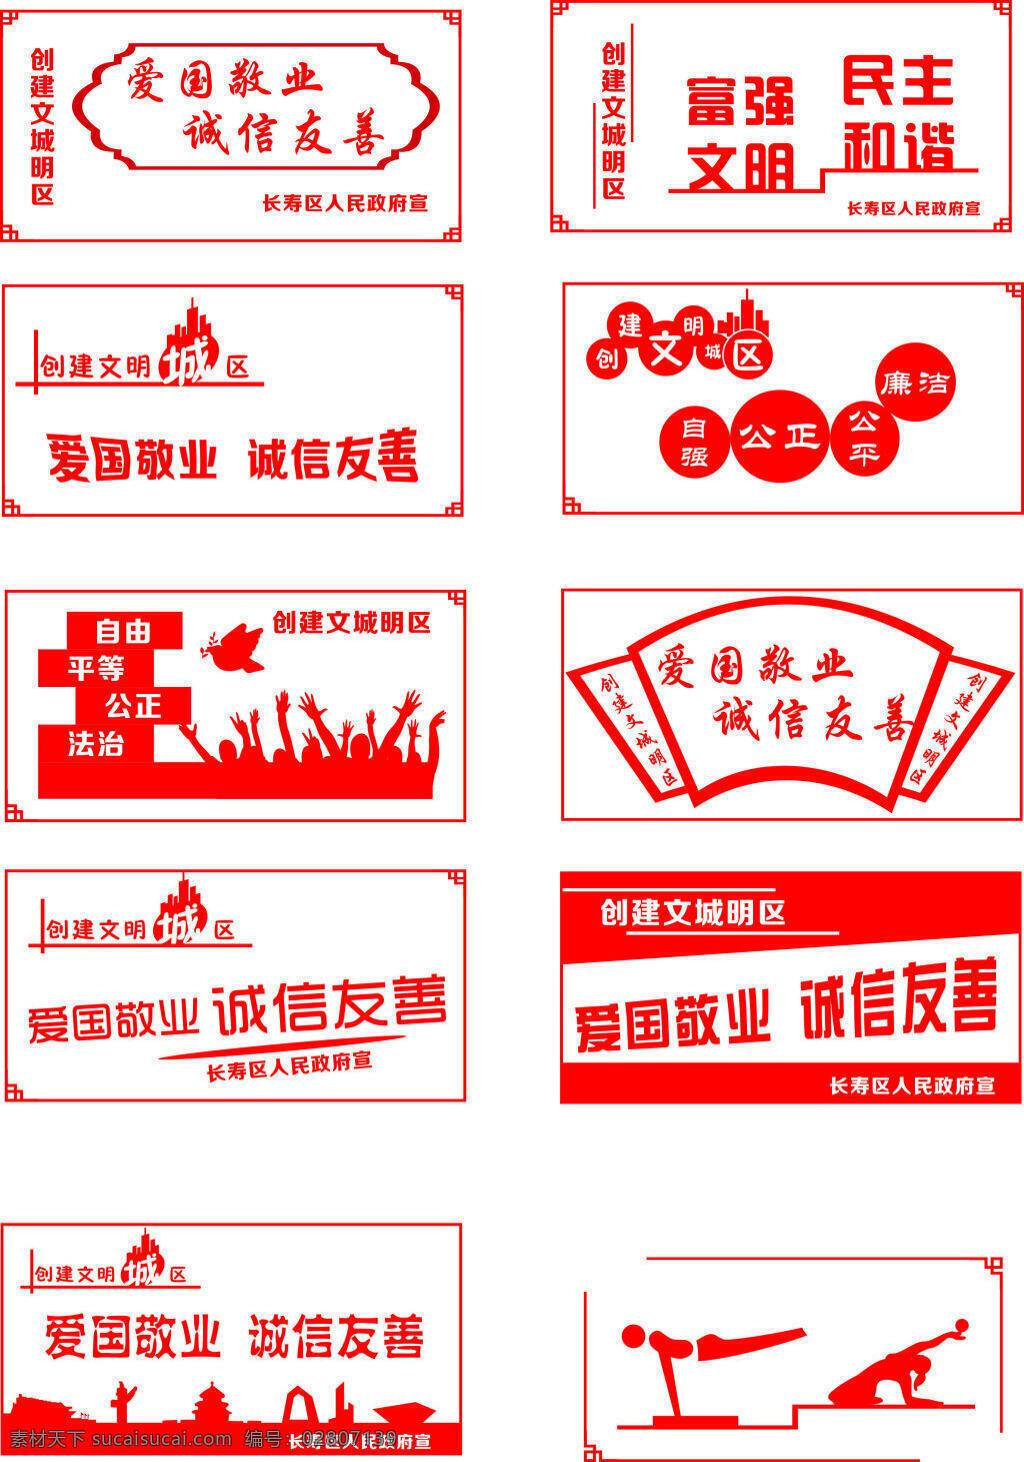 创建 文明 城区 海报 公益 中国风 简洁 大方